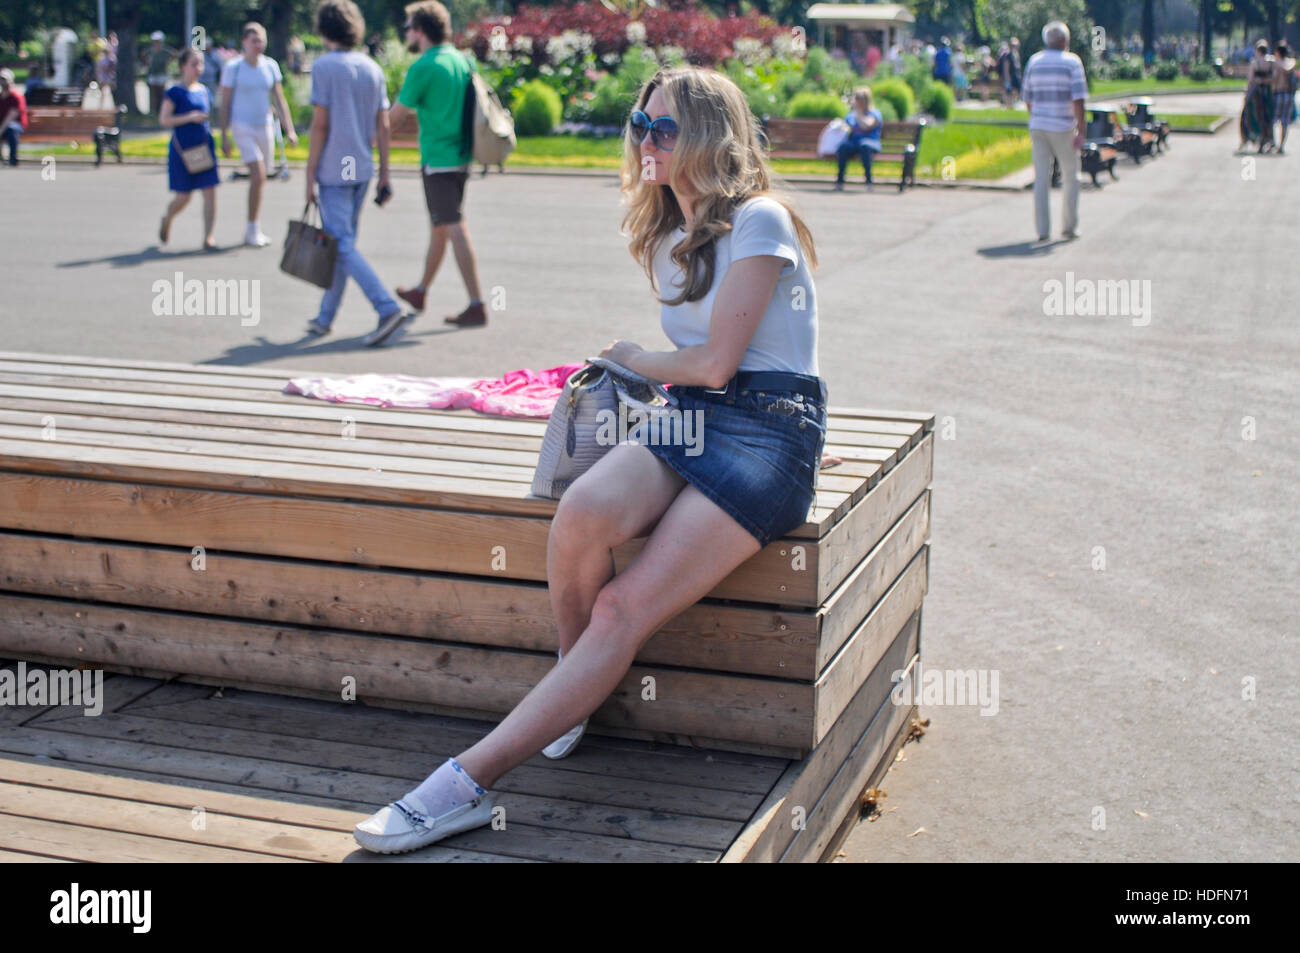 Femme blonde portant des lunettes de soleil et un Jean mini jupe, assise sur un banc en bois. Parc Gorky, Moscou Banque D'Images